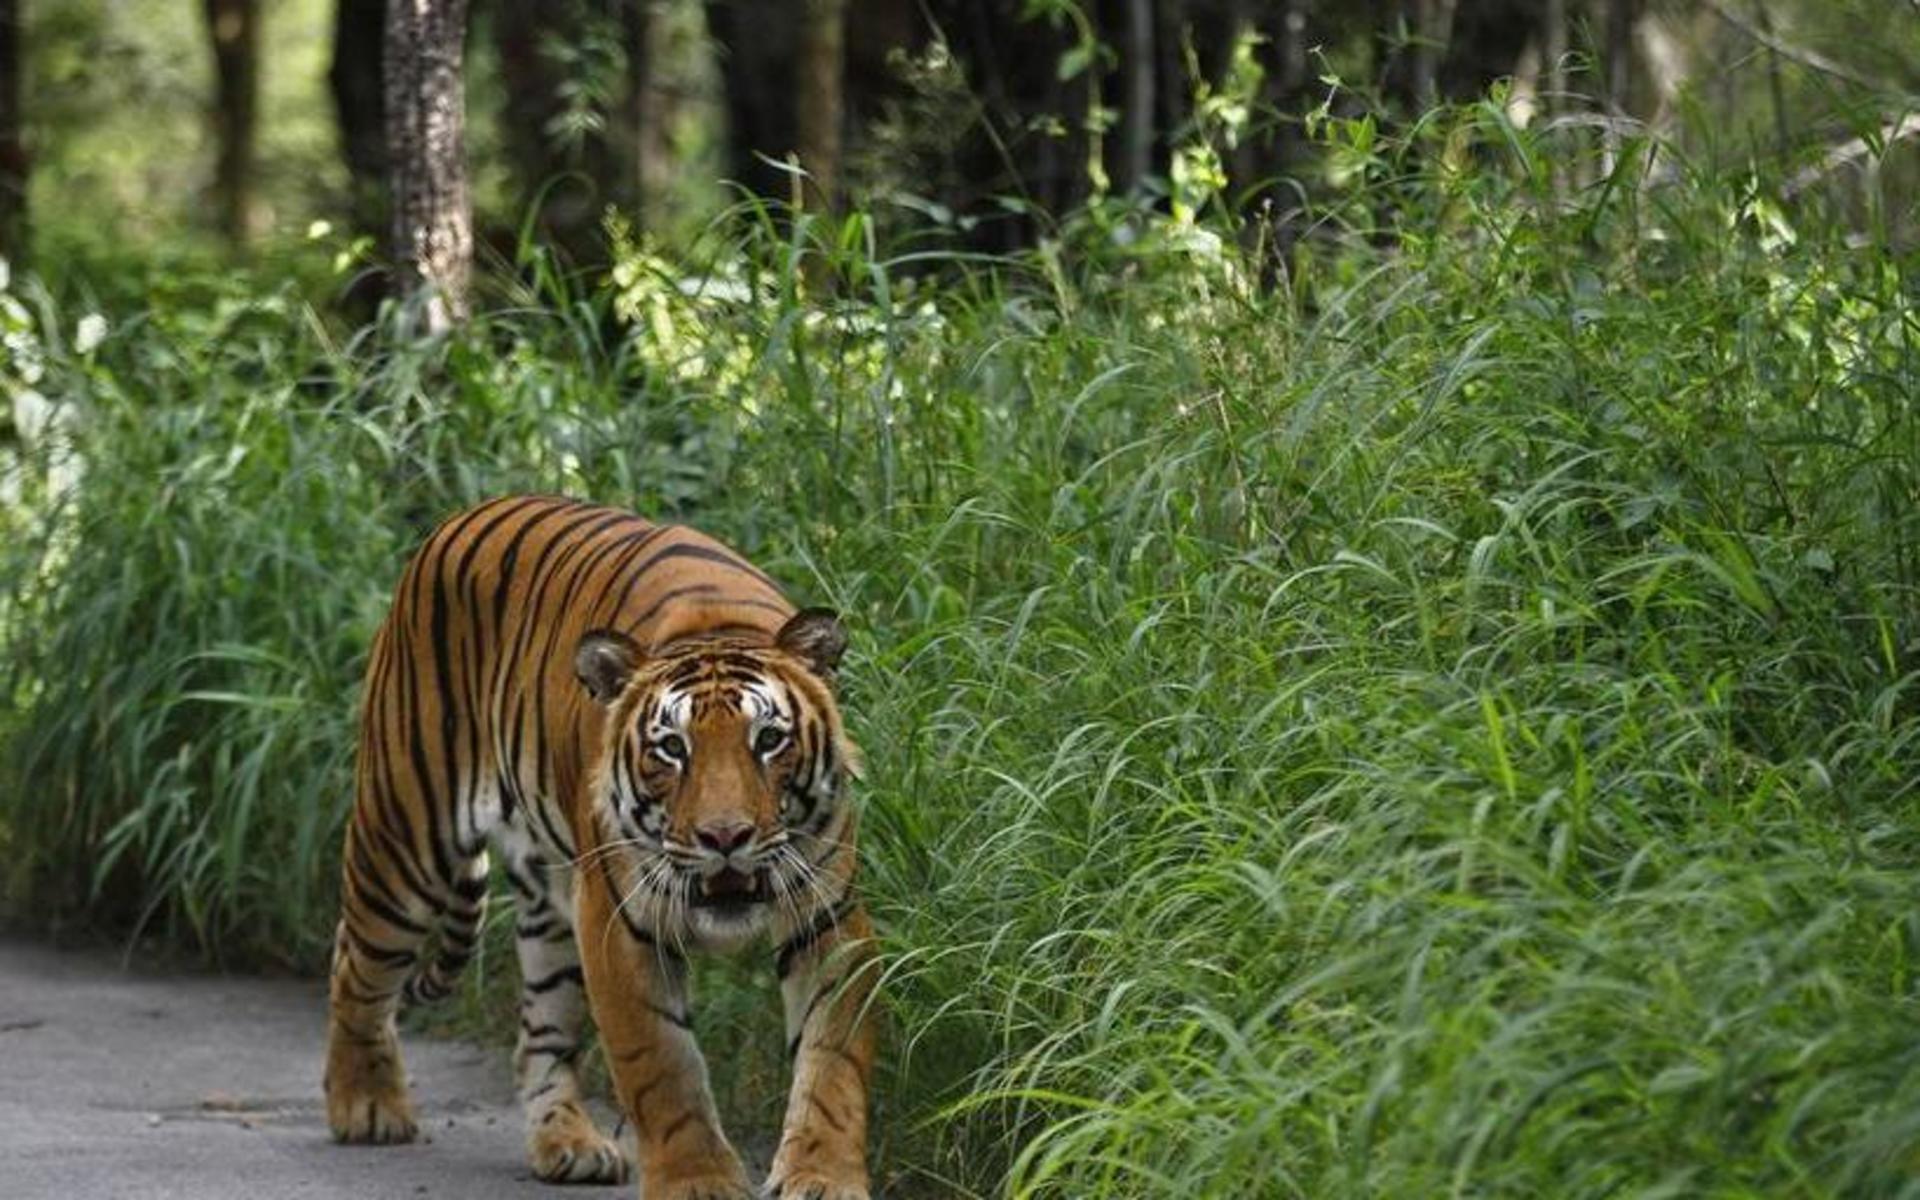 Det var efter ett tips från allmänheten som den nu 50-årige mannen kunde gripas i närheten av mangroveskogen vid floddeltat Sundarban under lördagsmorgonen, rapporterar <a href="https://www.bbc.com/news/world-asia-57308587" id="link-442ac6299e32c6e156743423ffd681e5">BBC</a>. Arkivbild.